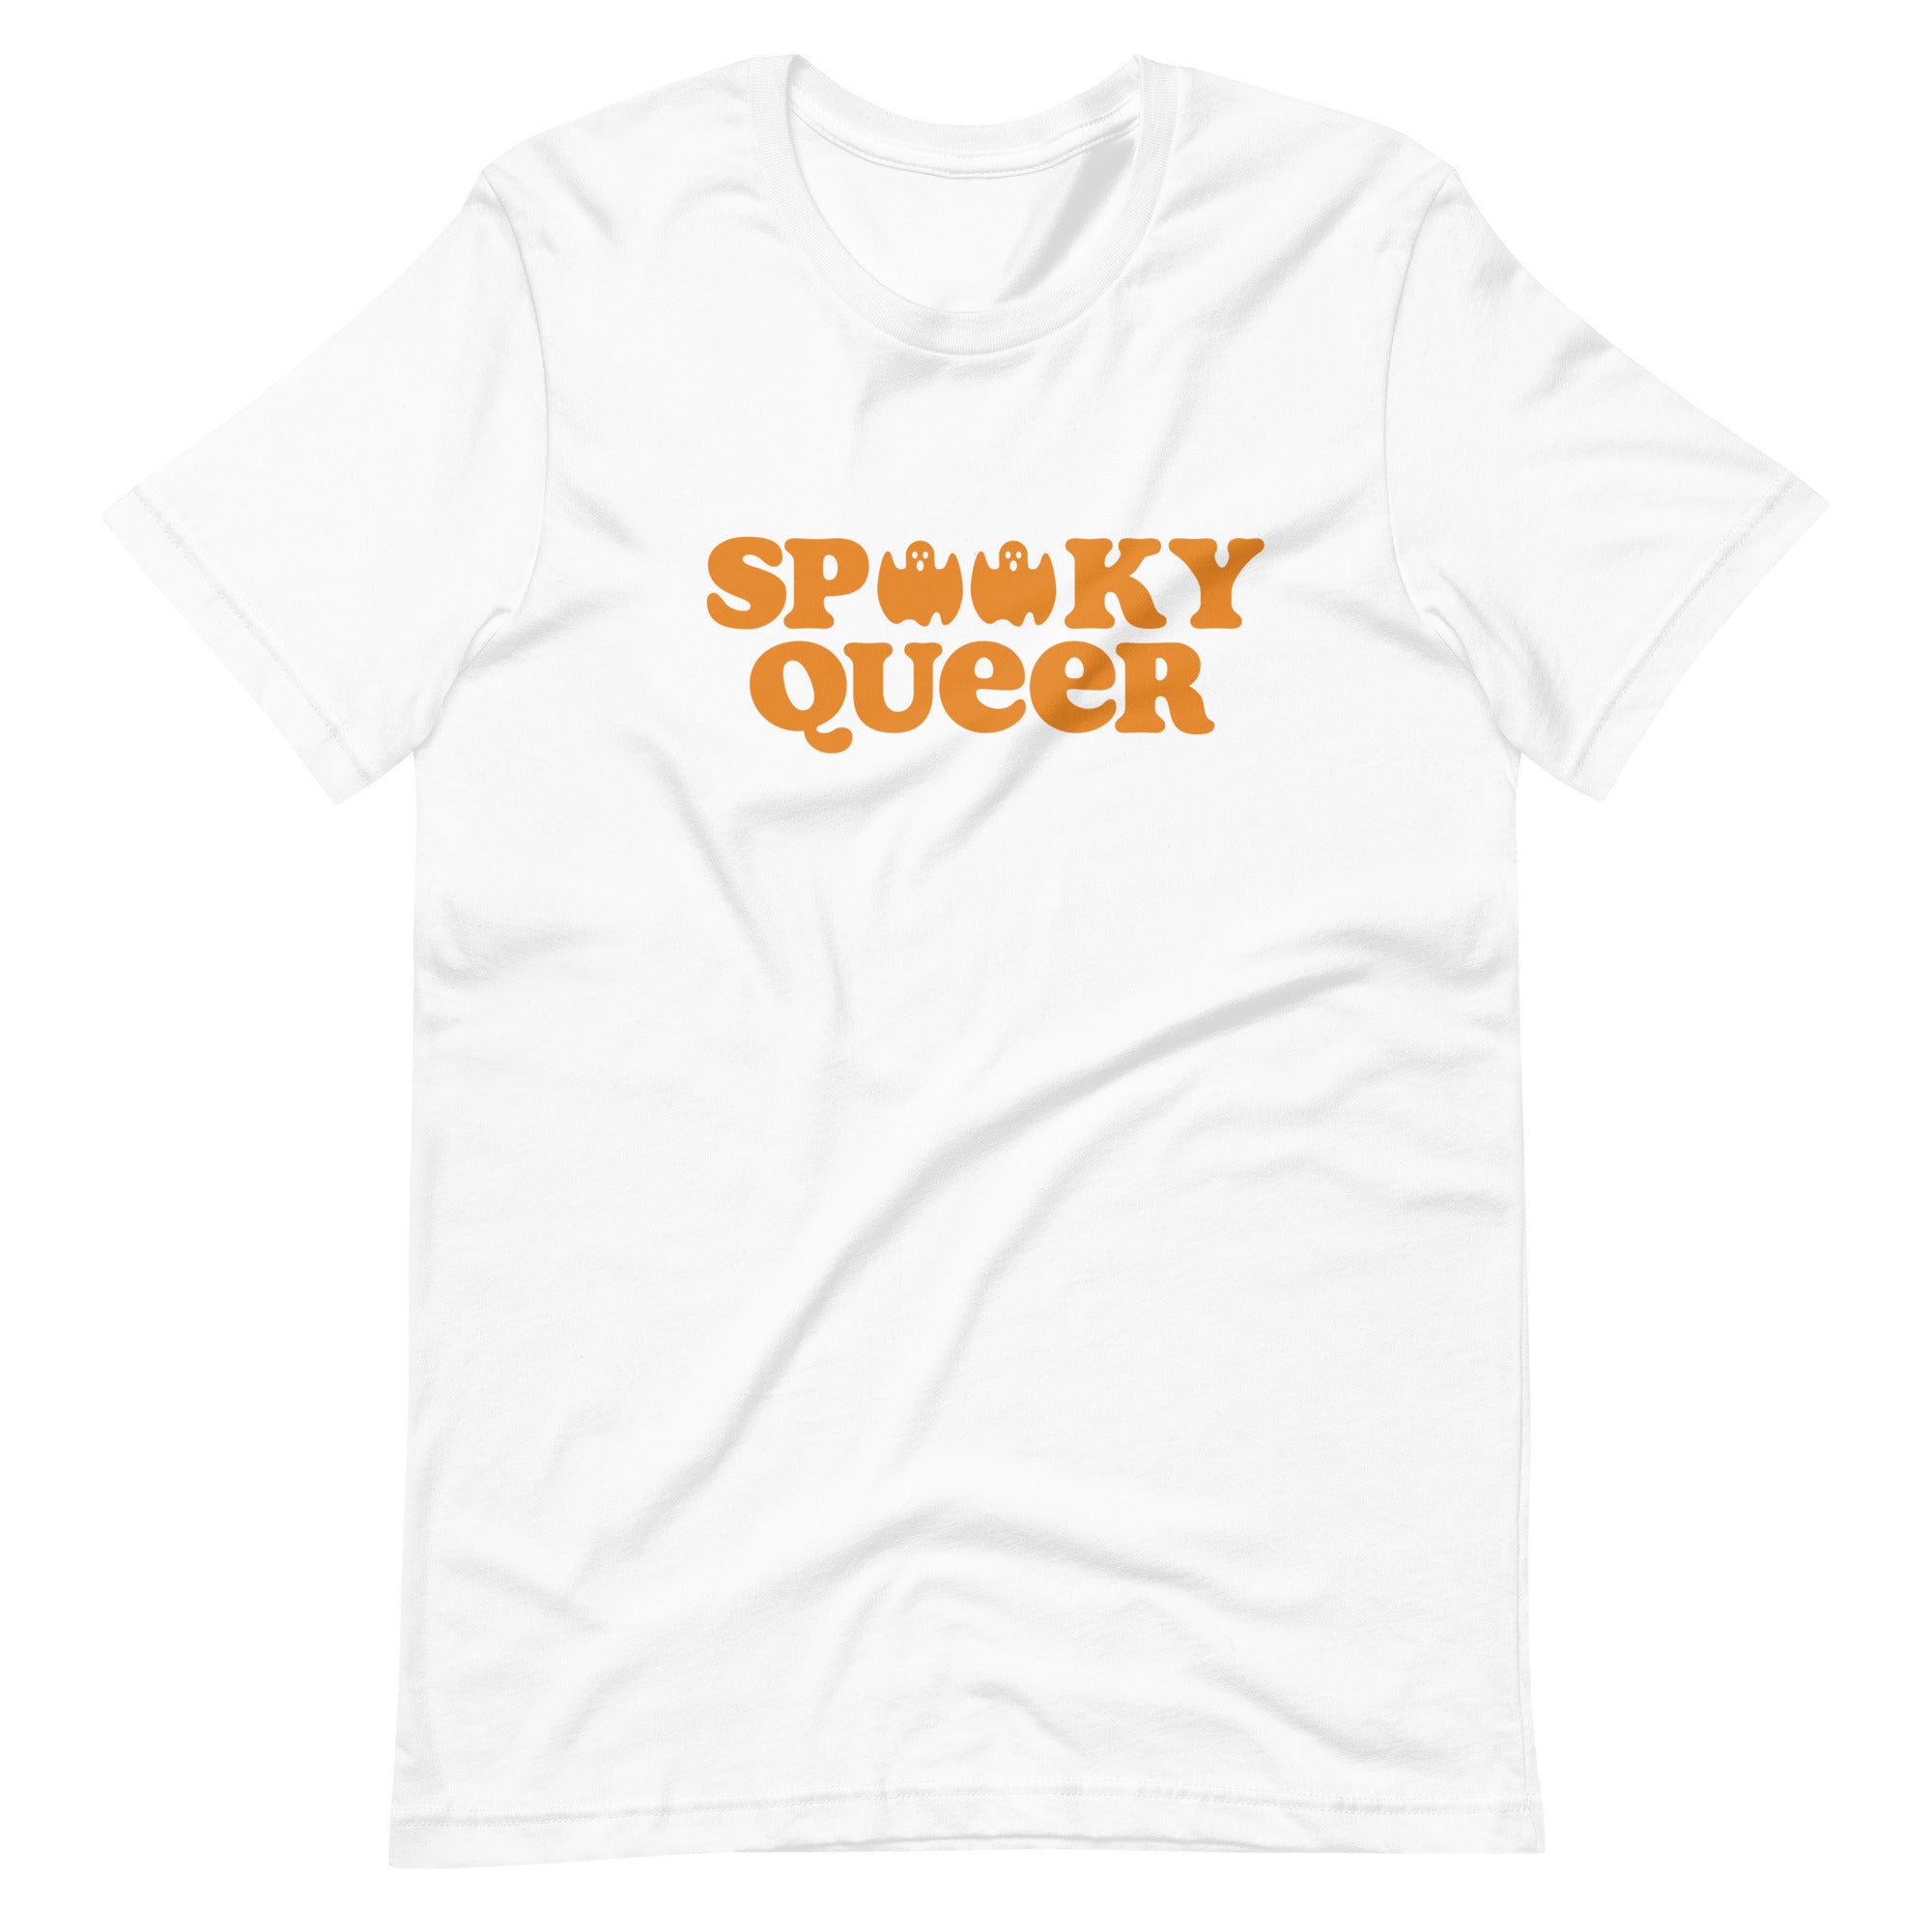 Spooky Queer Halloween t-shirt